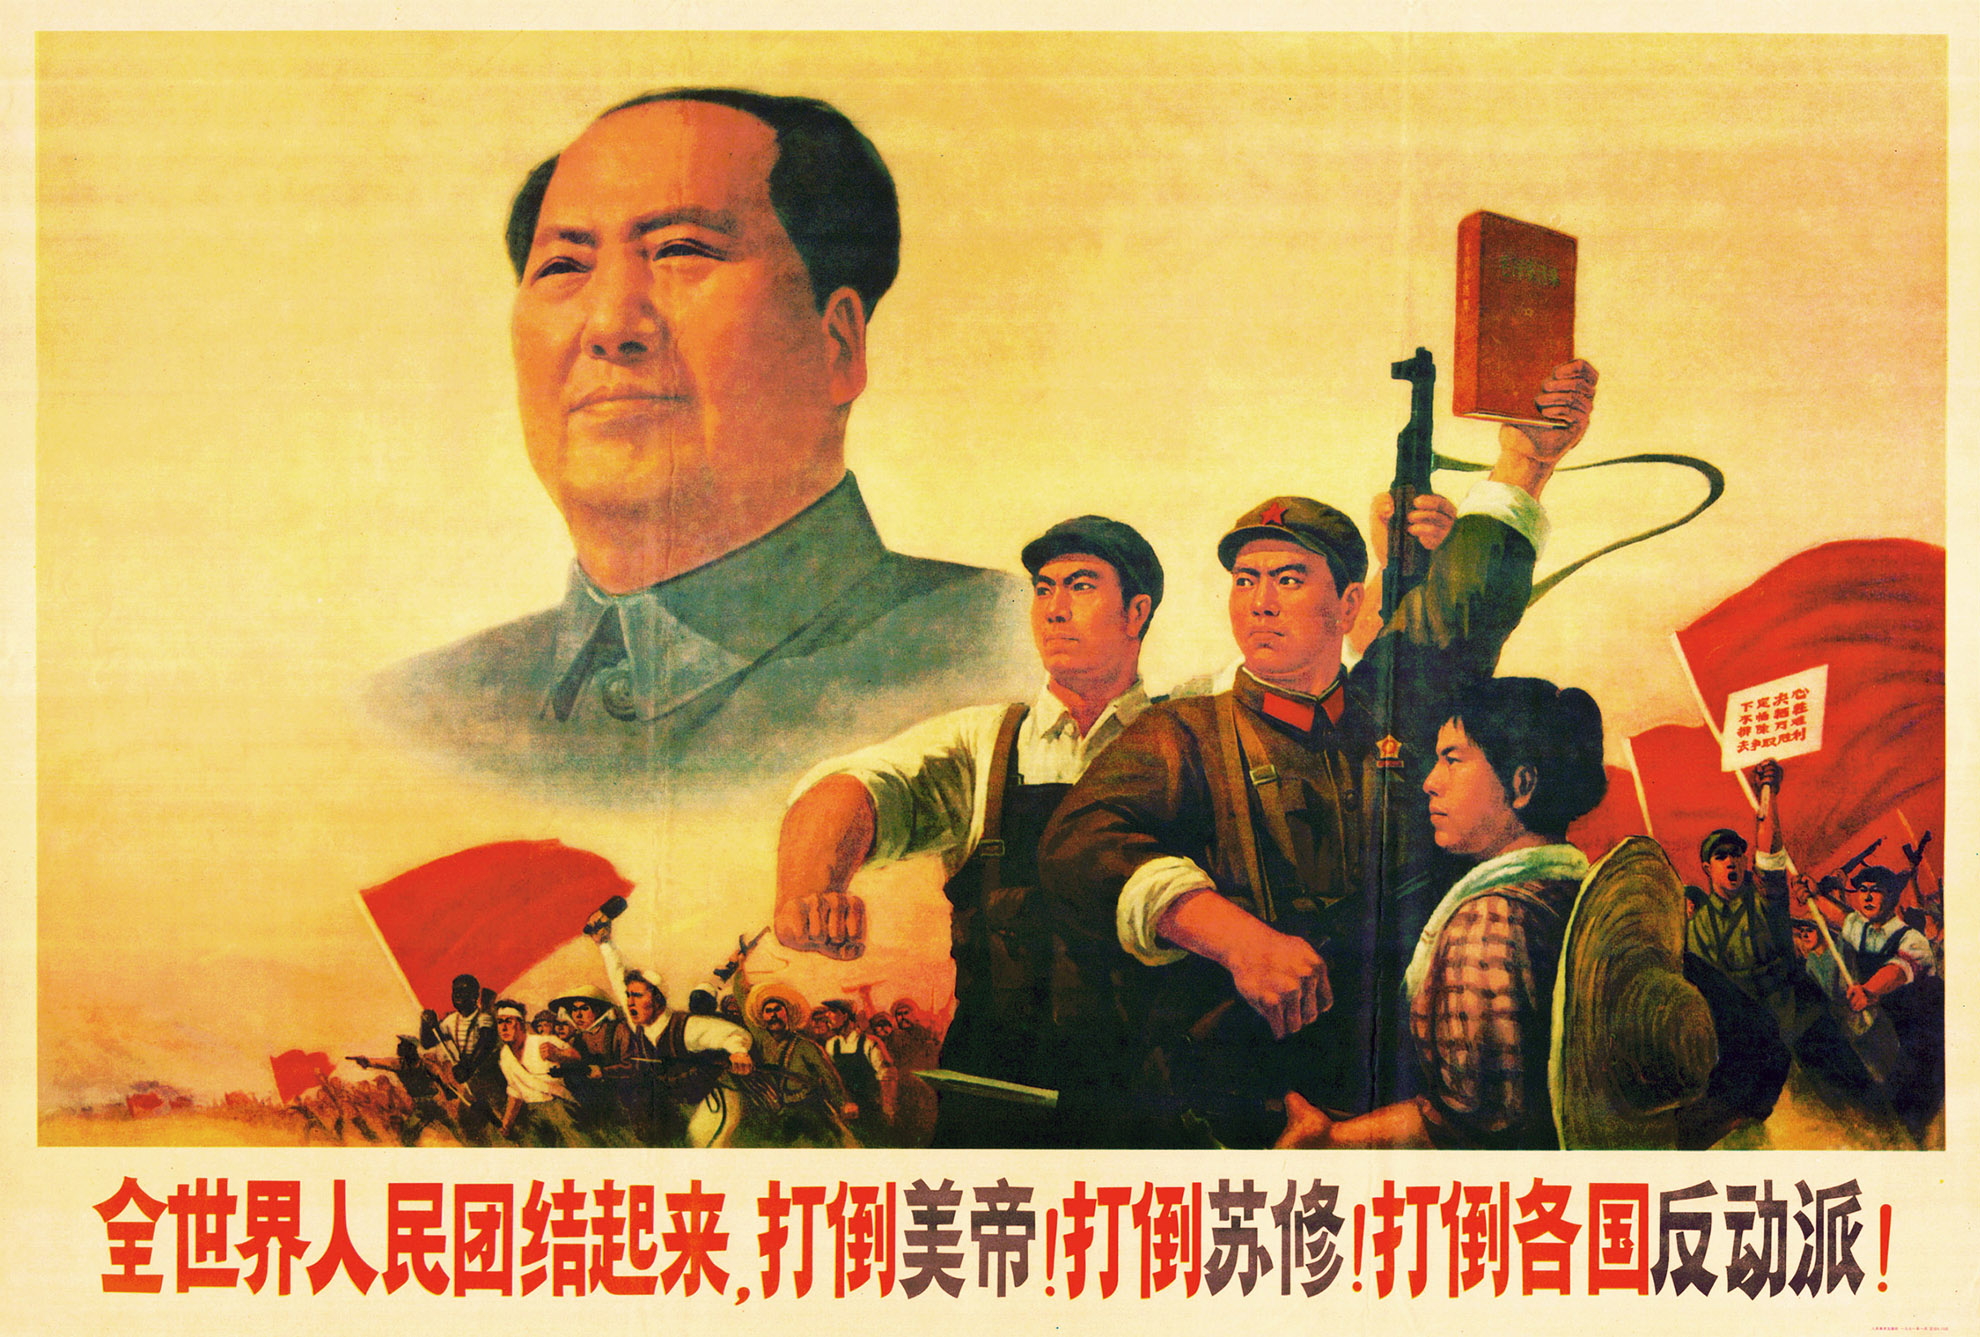 10 ЗАКОНОВ ТИРАНИИ: Мао Цзэдун из Китая